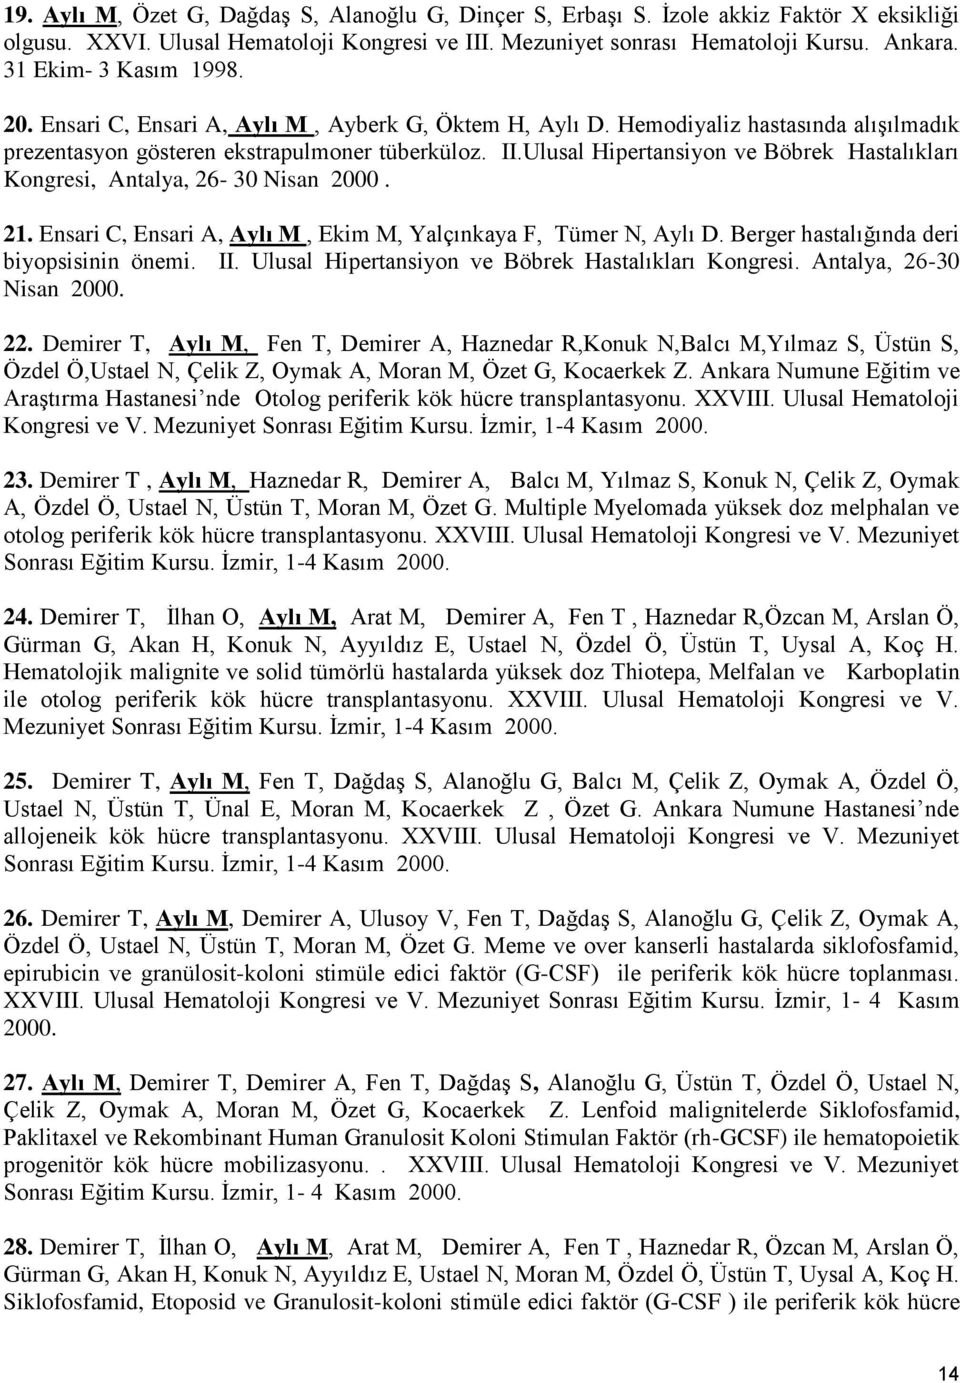 Ulusal Hipertansiyon ve Böbrek Hastalıkları Kongresi, Antalya, 26-30 Nisan 2000. 21. Ensari C, Ensari A, Aylı M, Ekim M, Yalçınkaya F, Tümer N, Aylı D. Berger hastalığında deri biyopsisinin önemi. II.